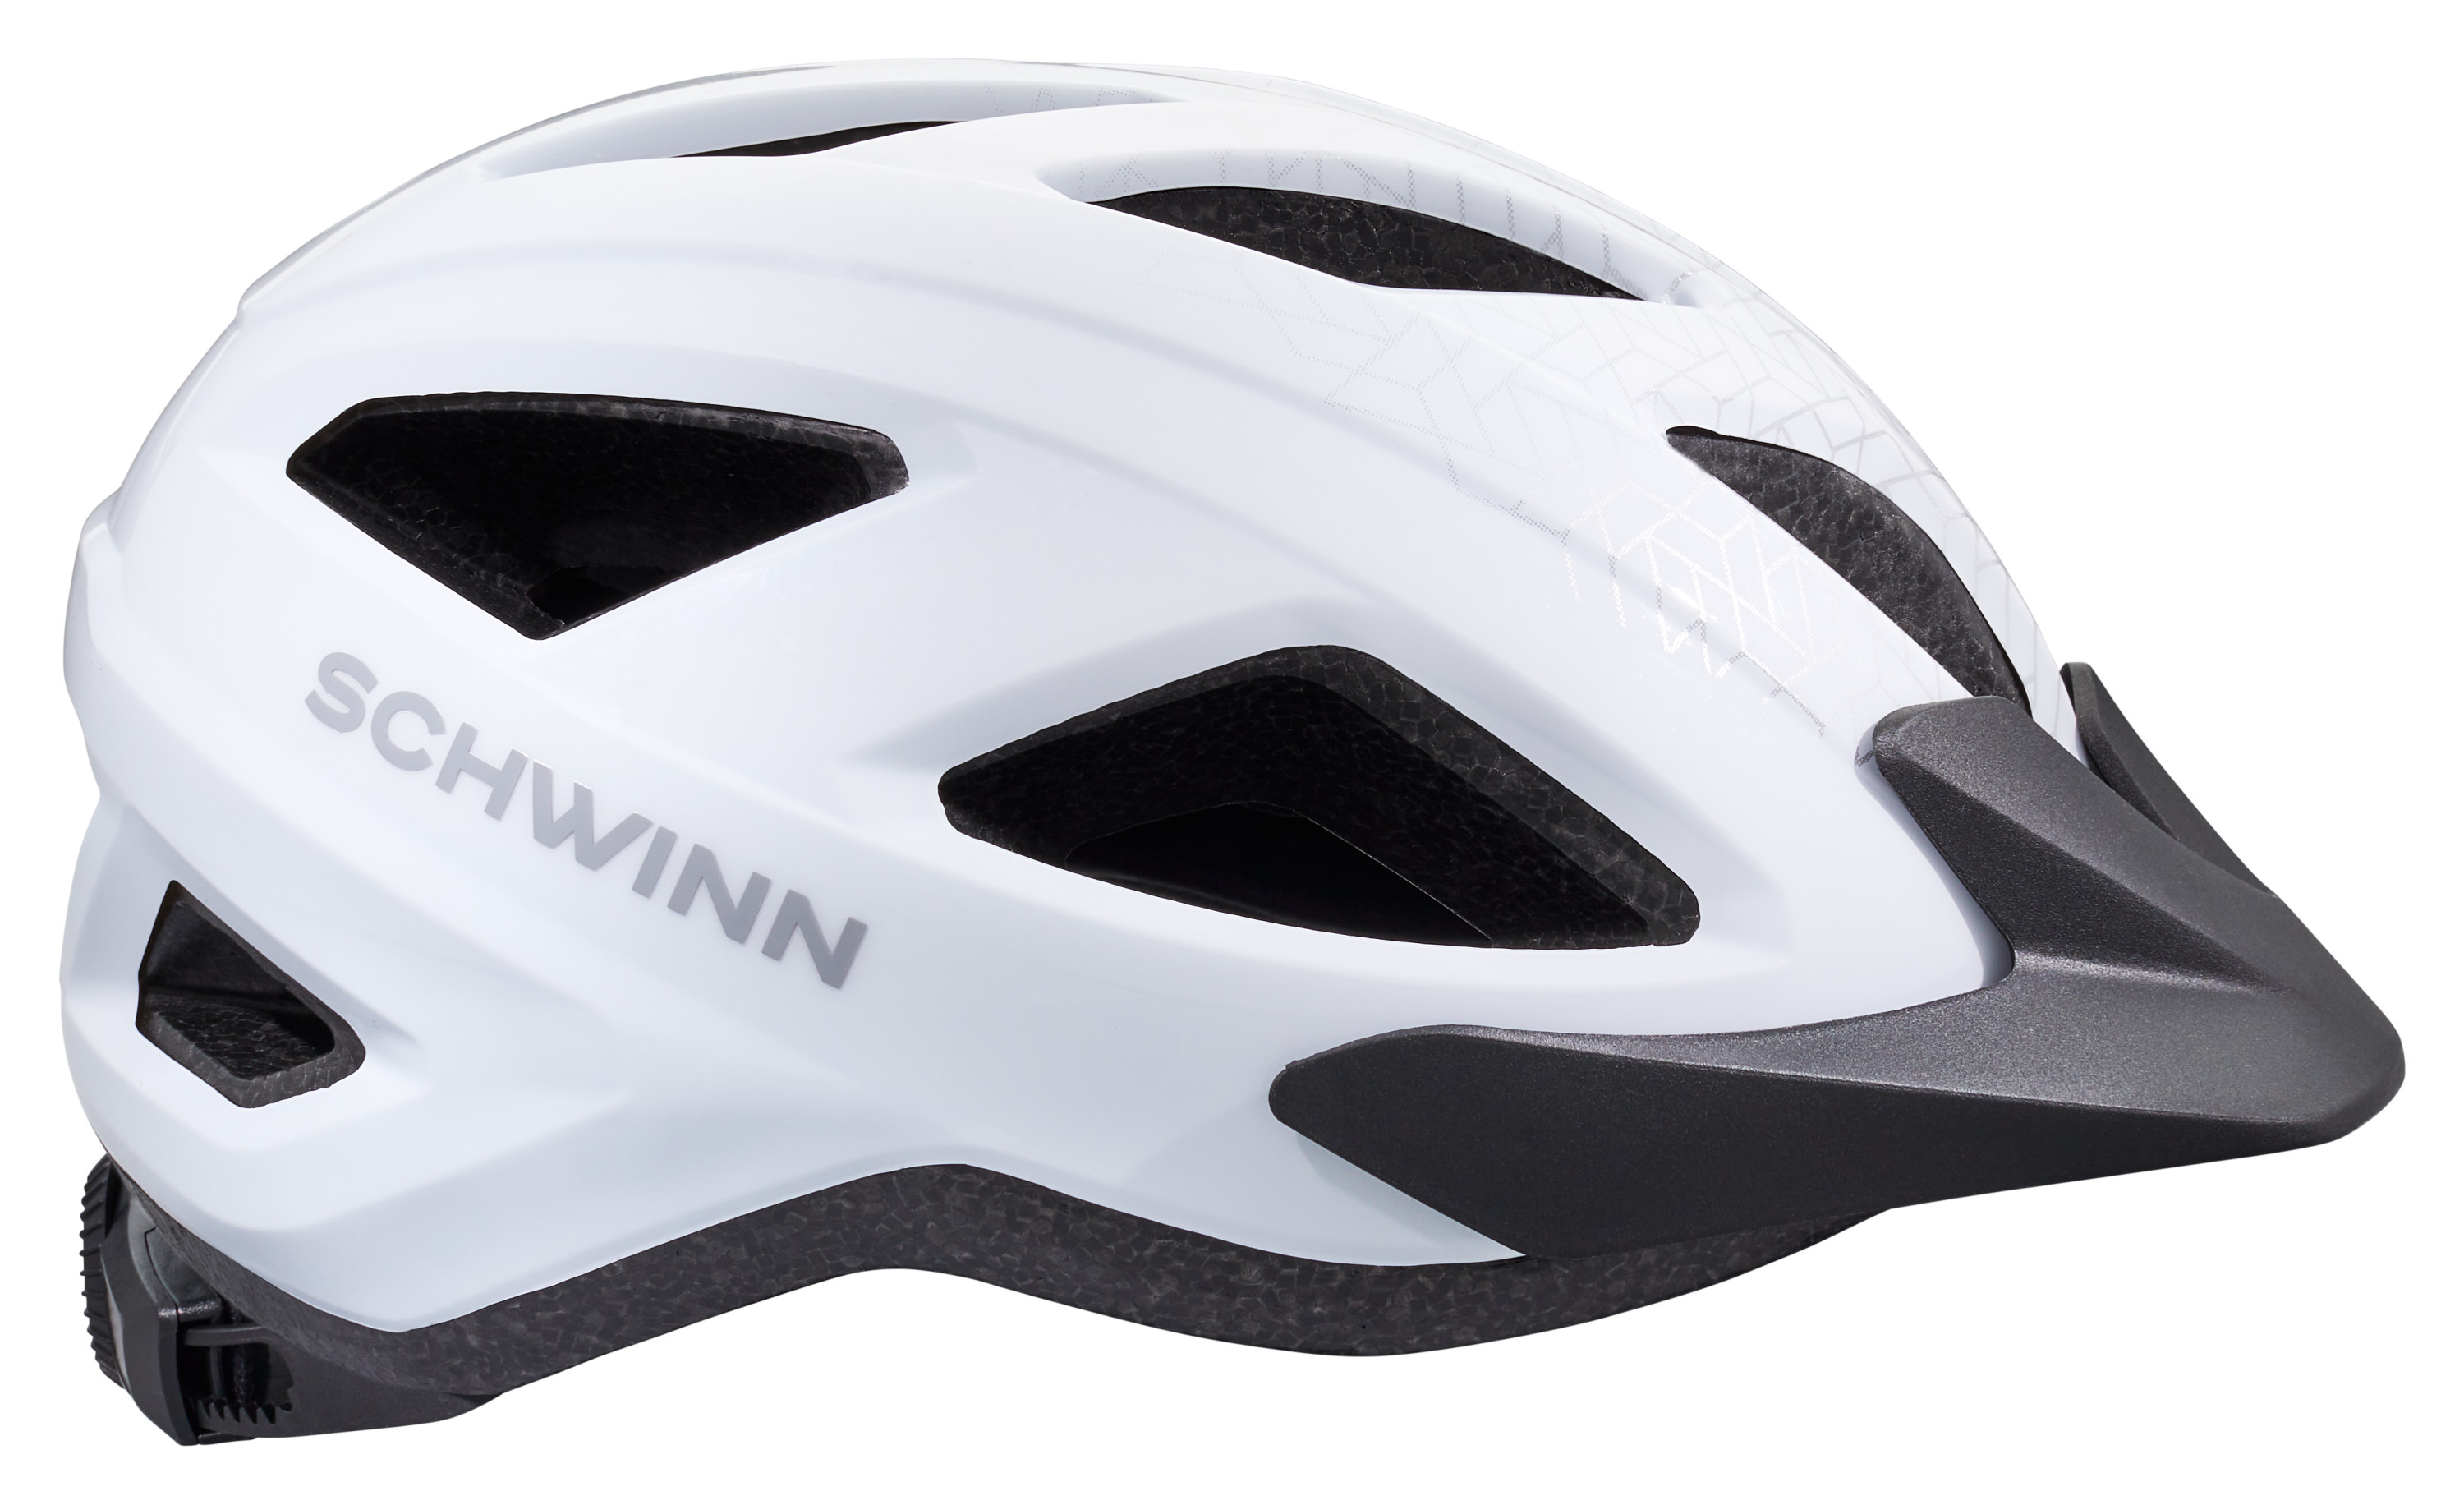 Schwinn Waypoint Adult Bike Helmet,Ages 14 +, White